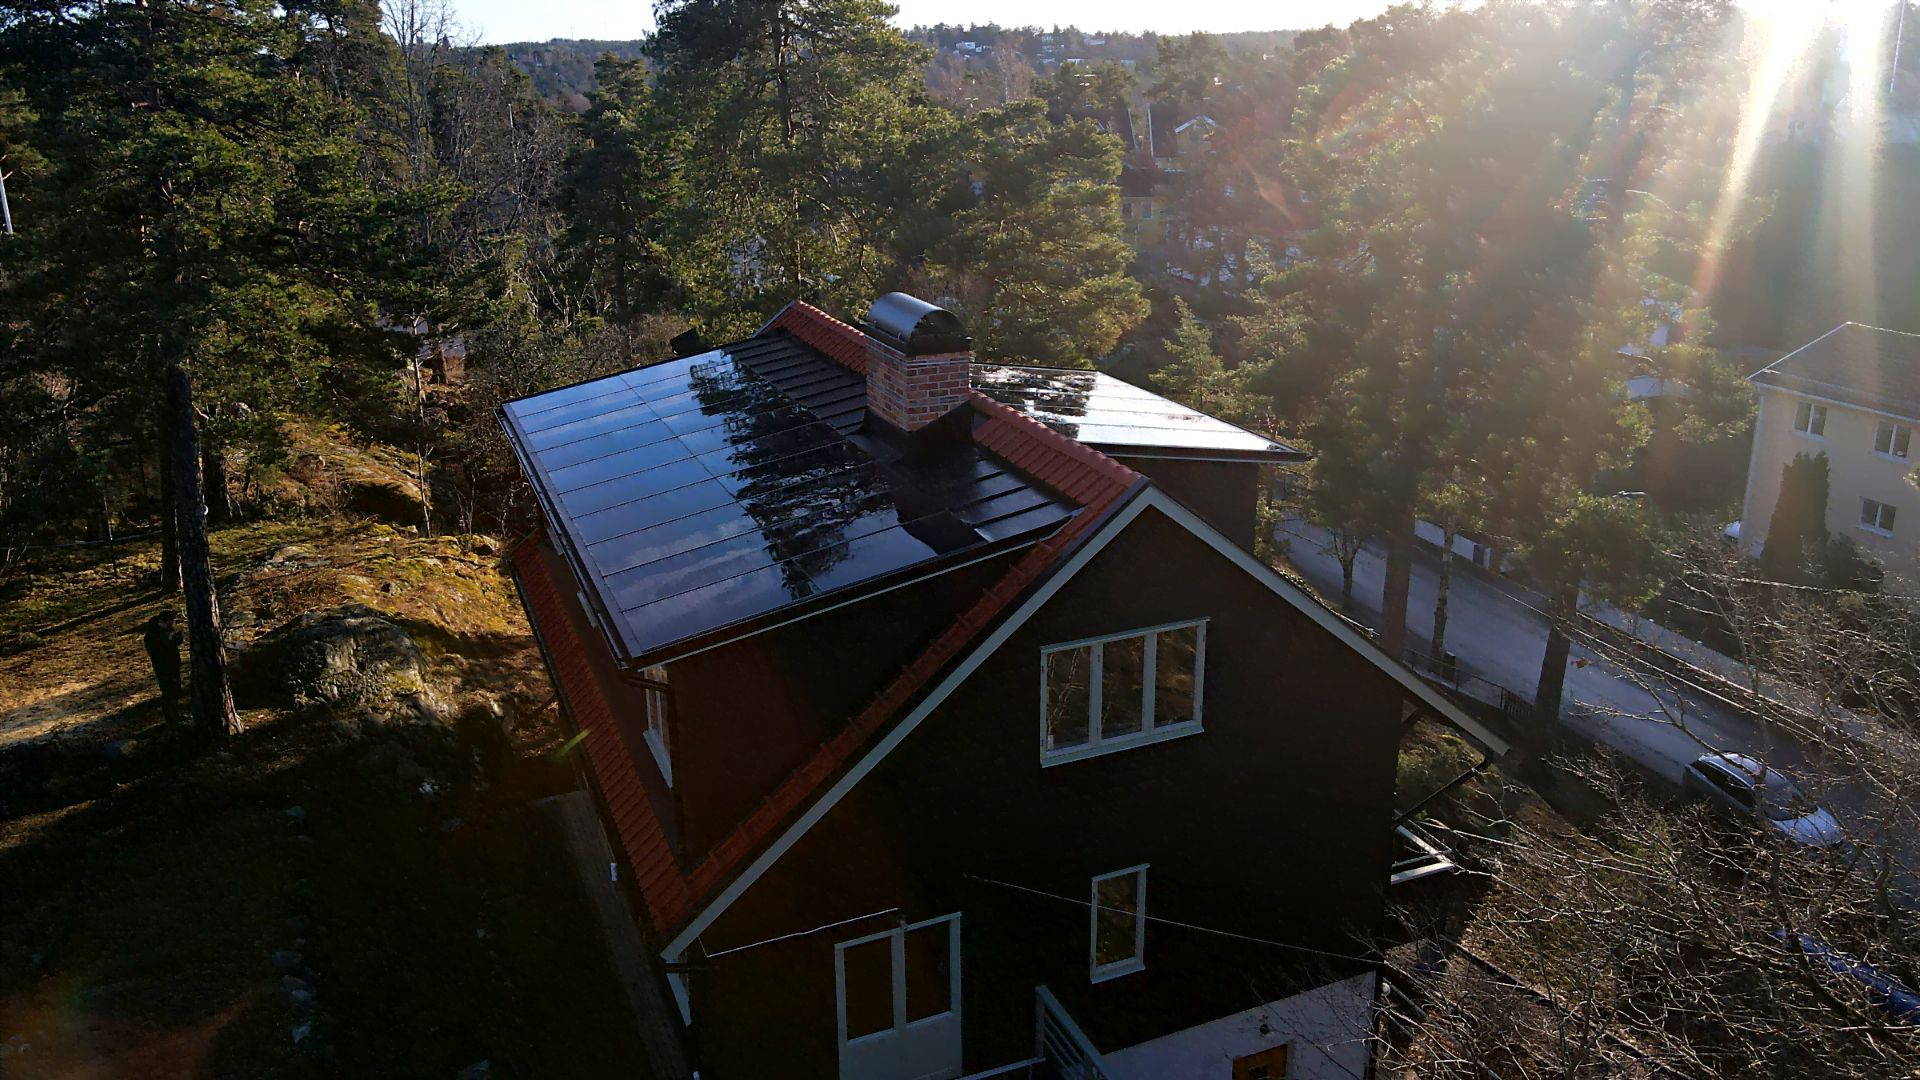 Solpaneler som tak kallas för soltak eller solcellstak. Välj ett soltak tidigt i din byggprocess när du ska bygga hus och få den snyggaste lösningen där ditt tak kan anpassas till solpanelernas mått.